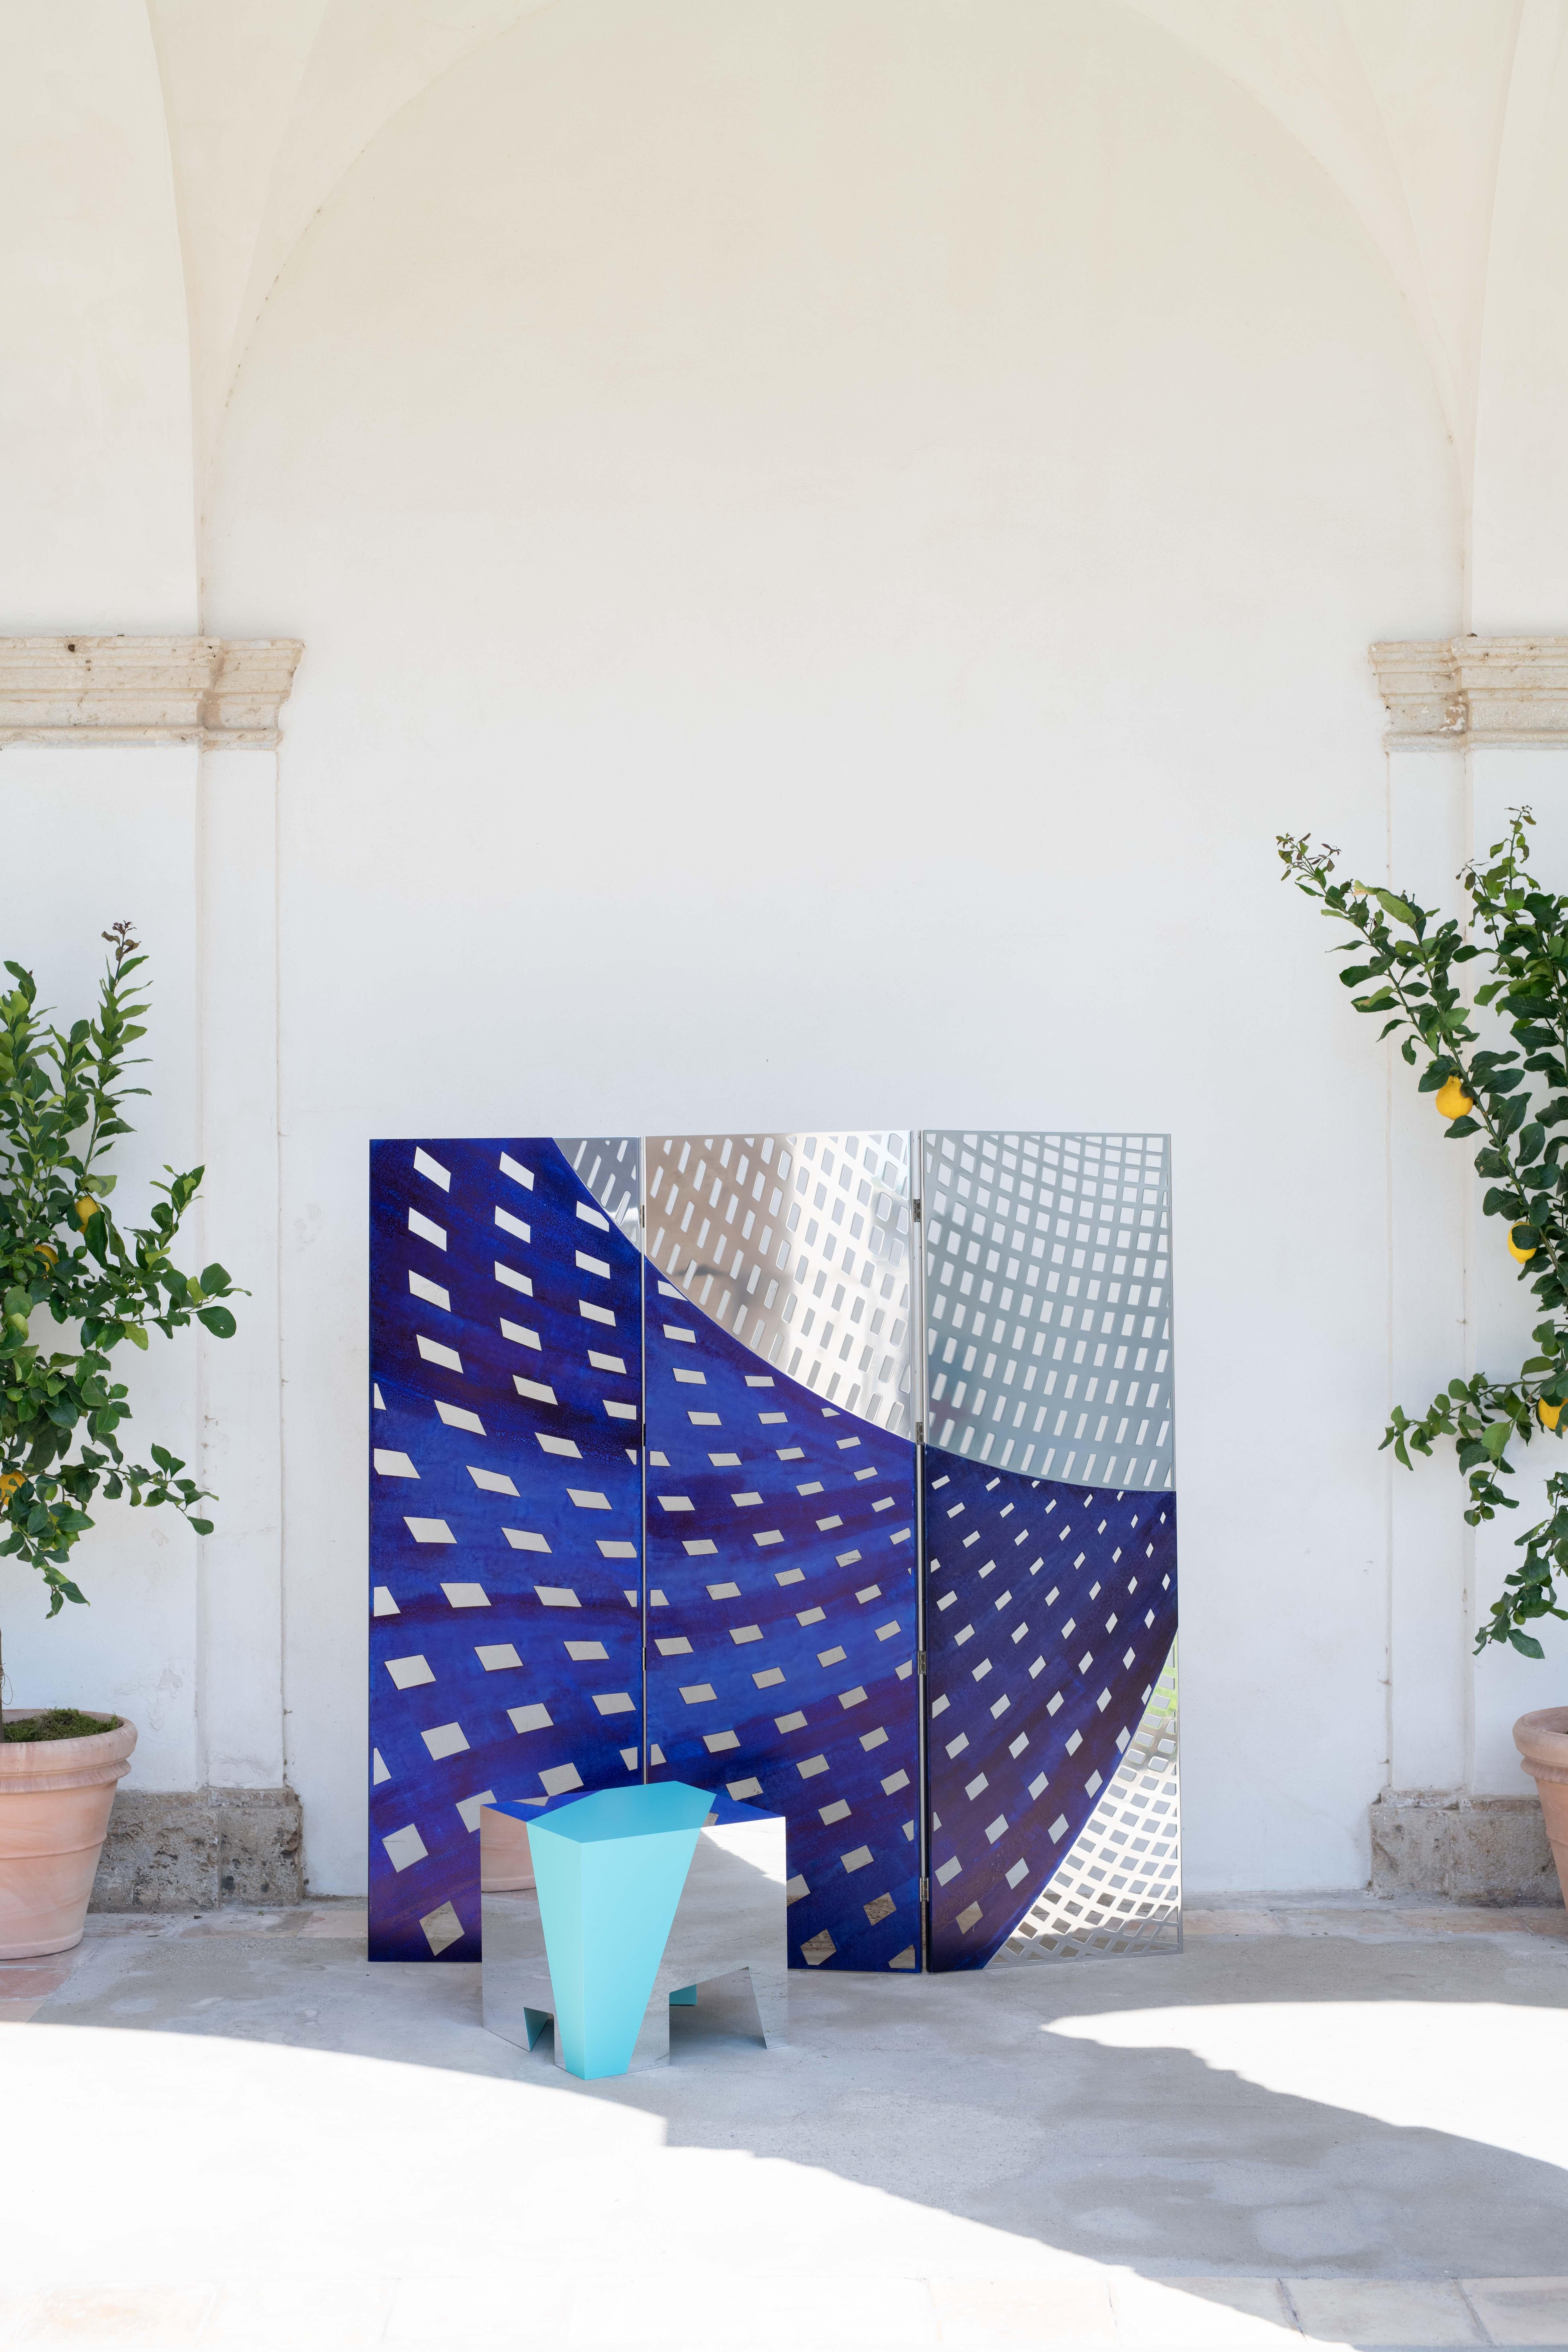 L'écran Otto, conçu par Doriana et Massimiliano Fuksas, est l'un des protagonistes de cette collection spéciale : les finitions en miroir qui reflètent les couleurs de la mer, les vagues bleu de Prusse et la matérialité de l'aluminium pur